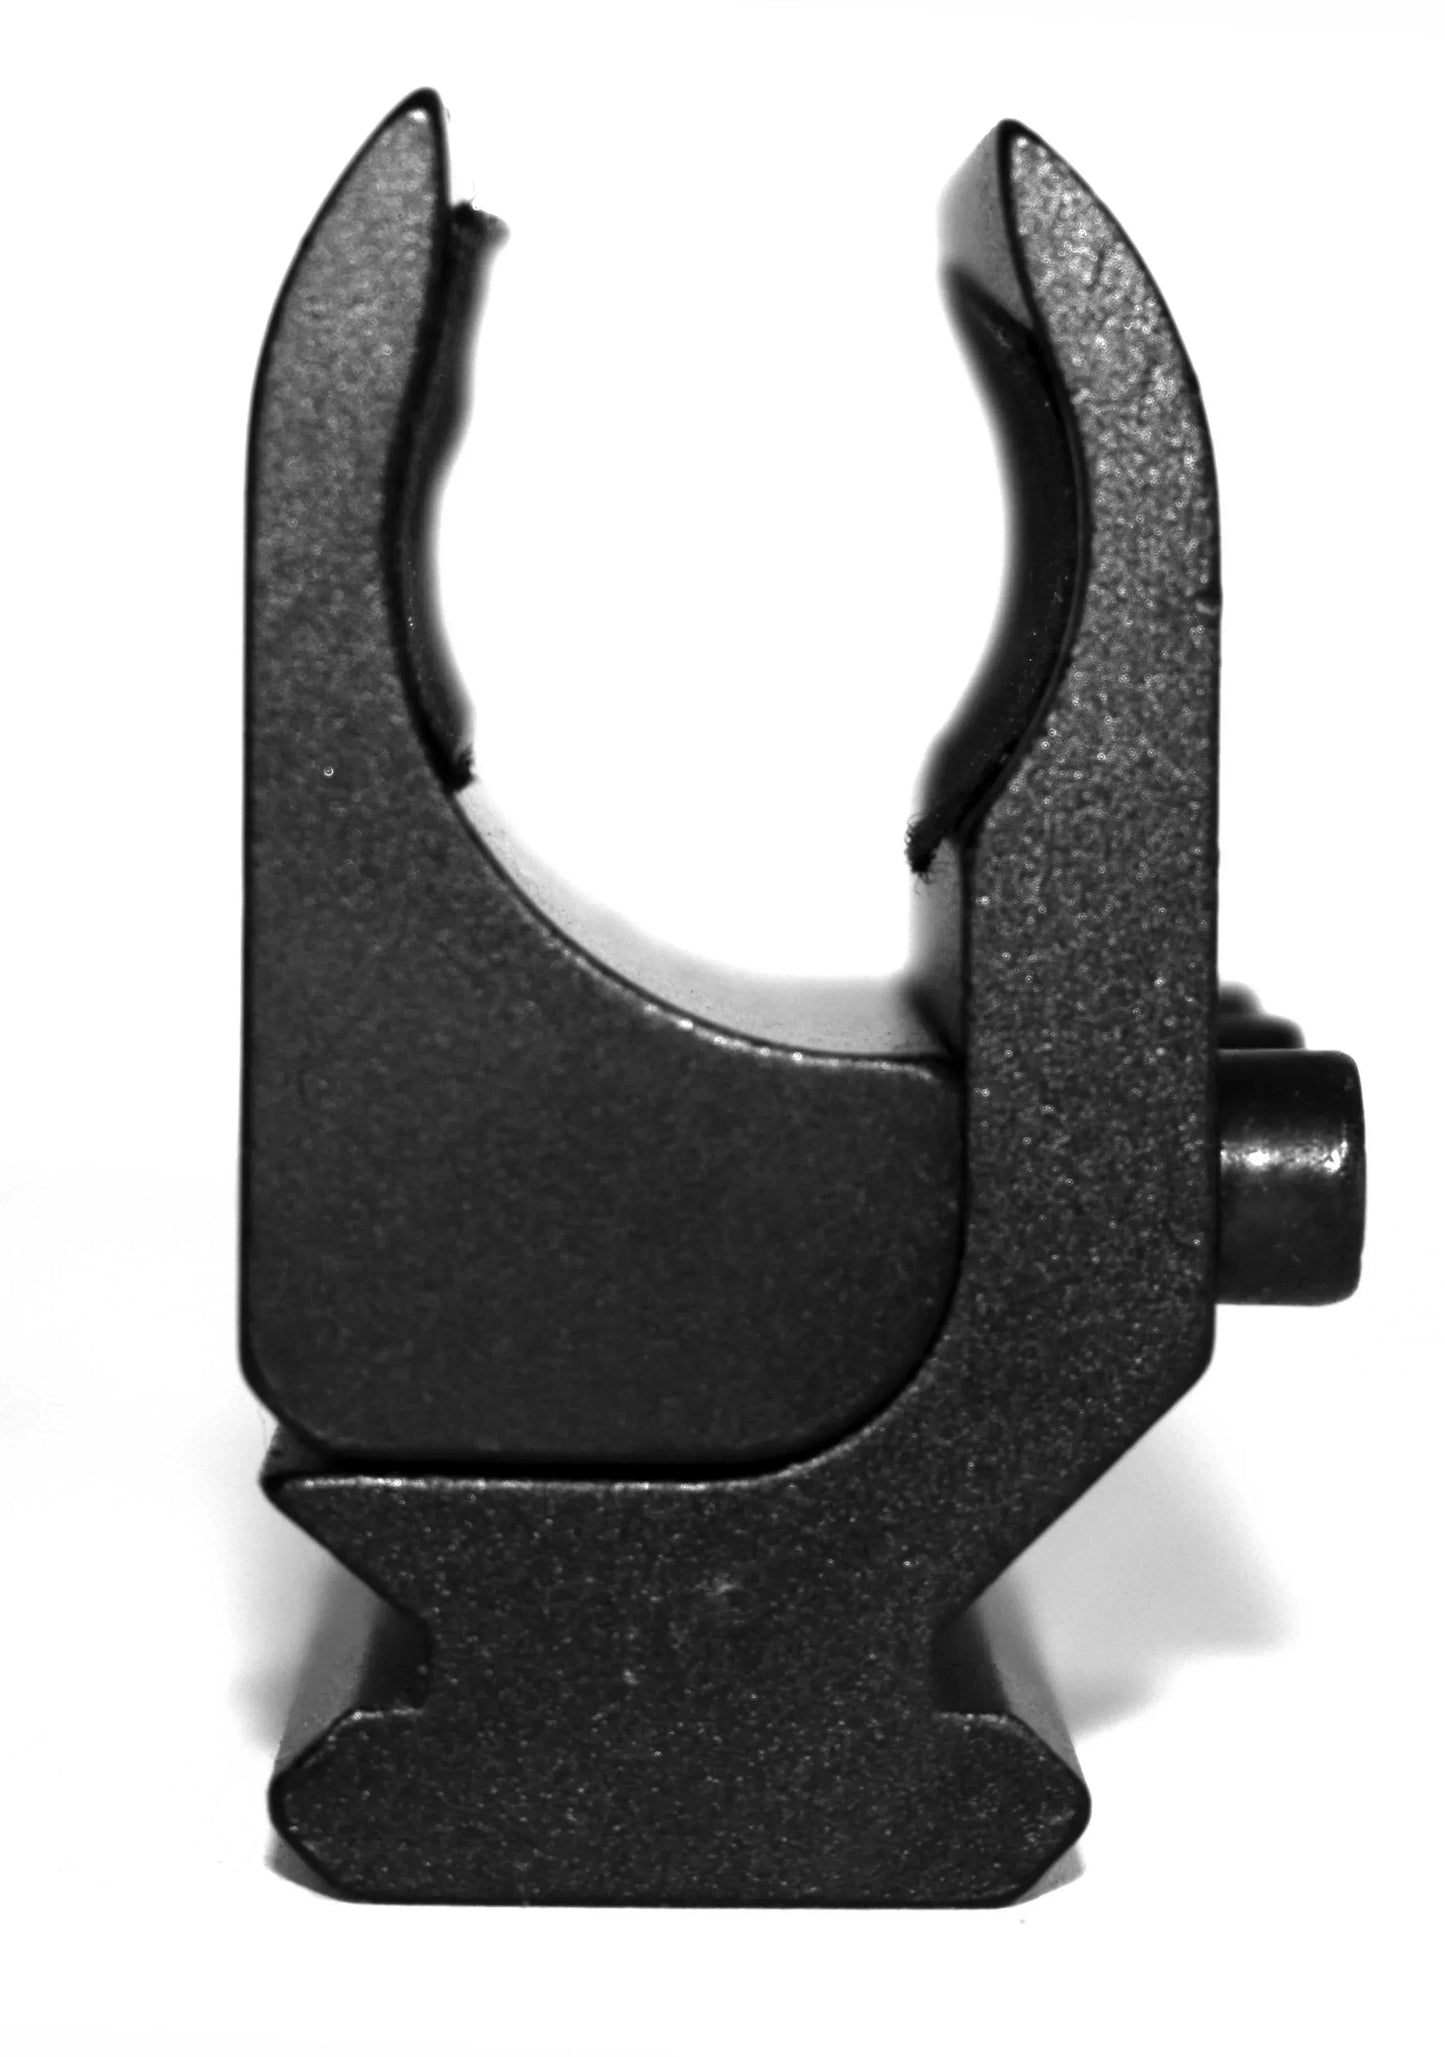 magazine tube mount adapter for sxp winchester defender model.